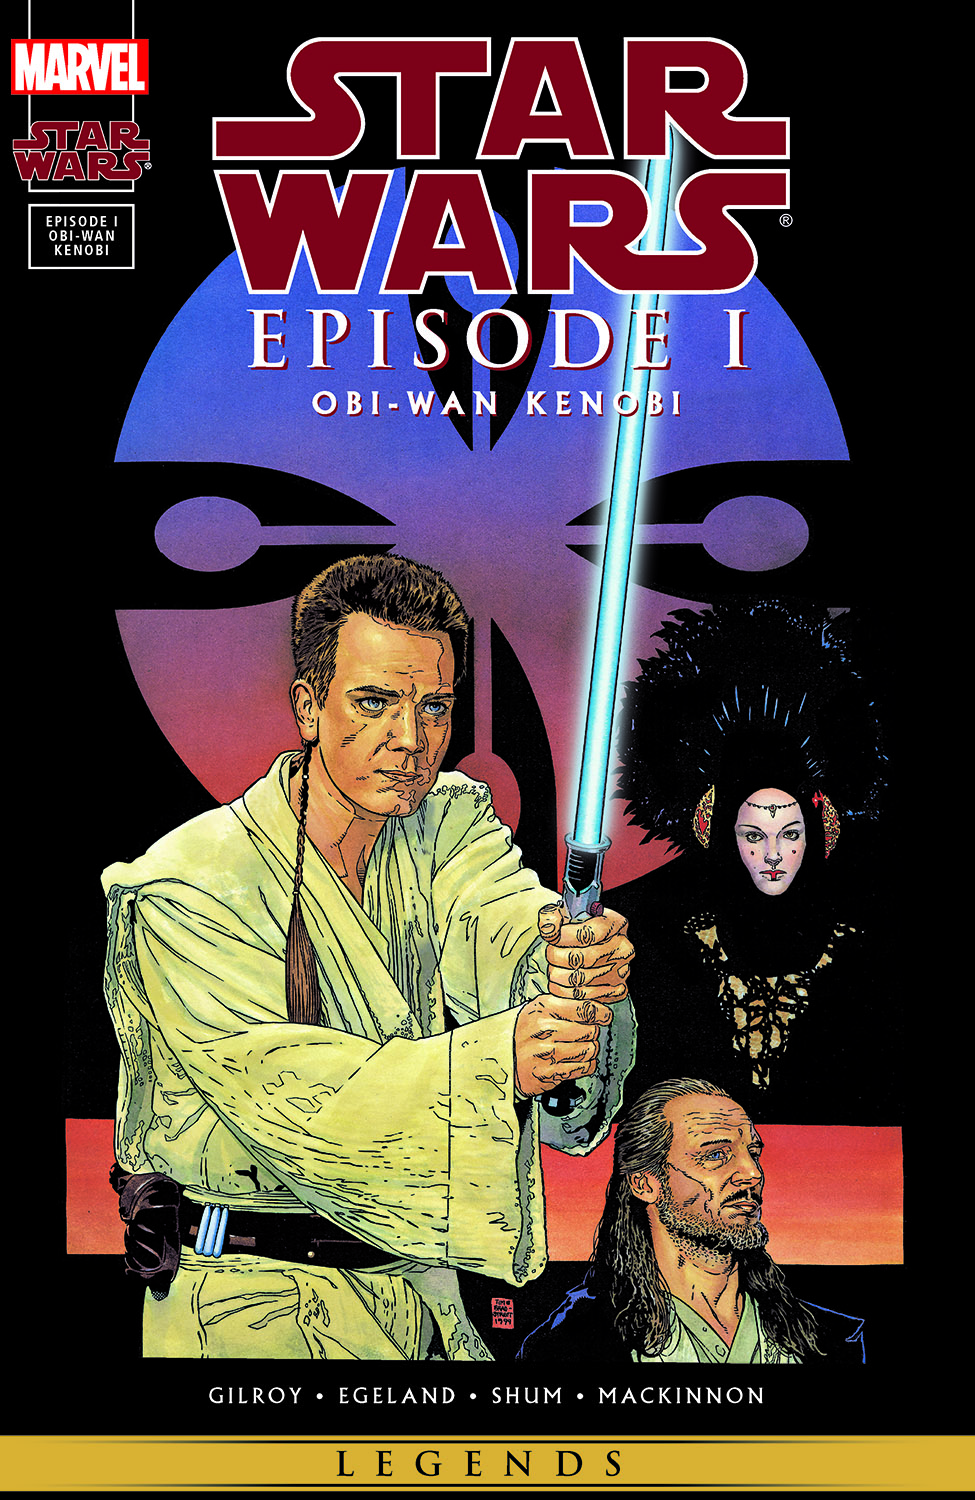 Obi-Wan Kenobi The Phantom Menace Star Wars Episode I Collection 1999 